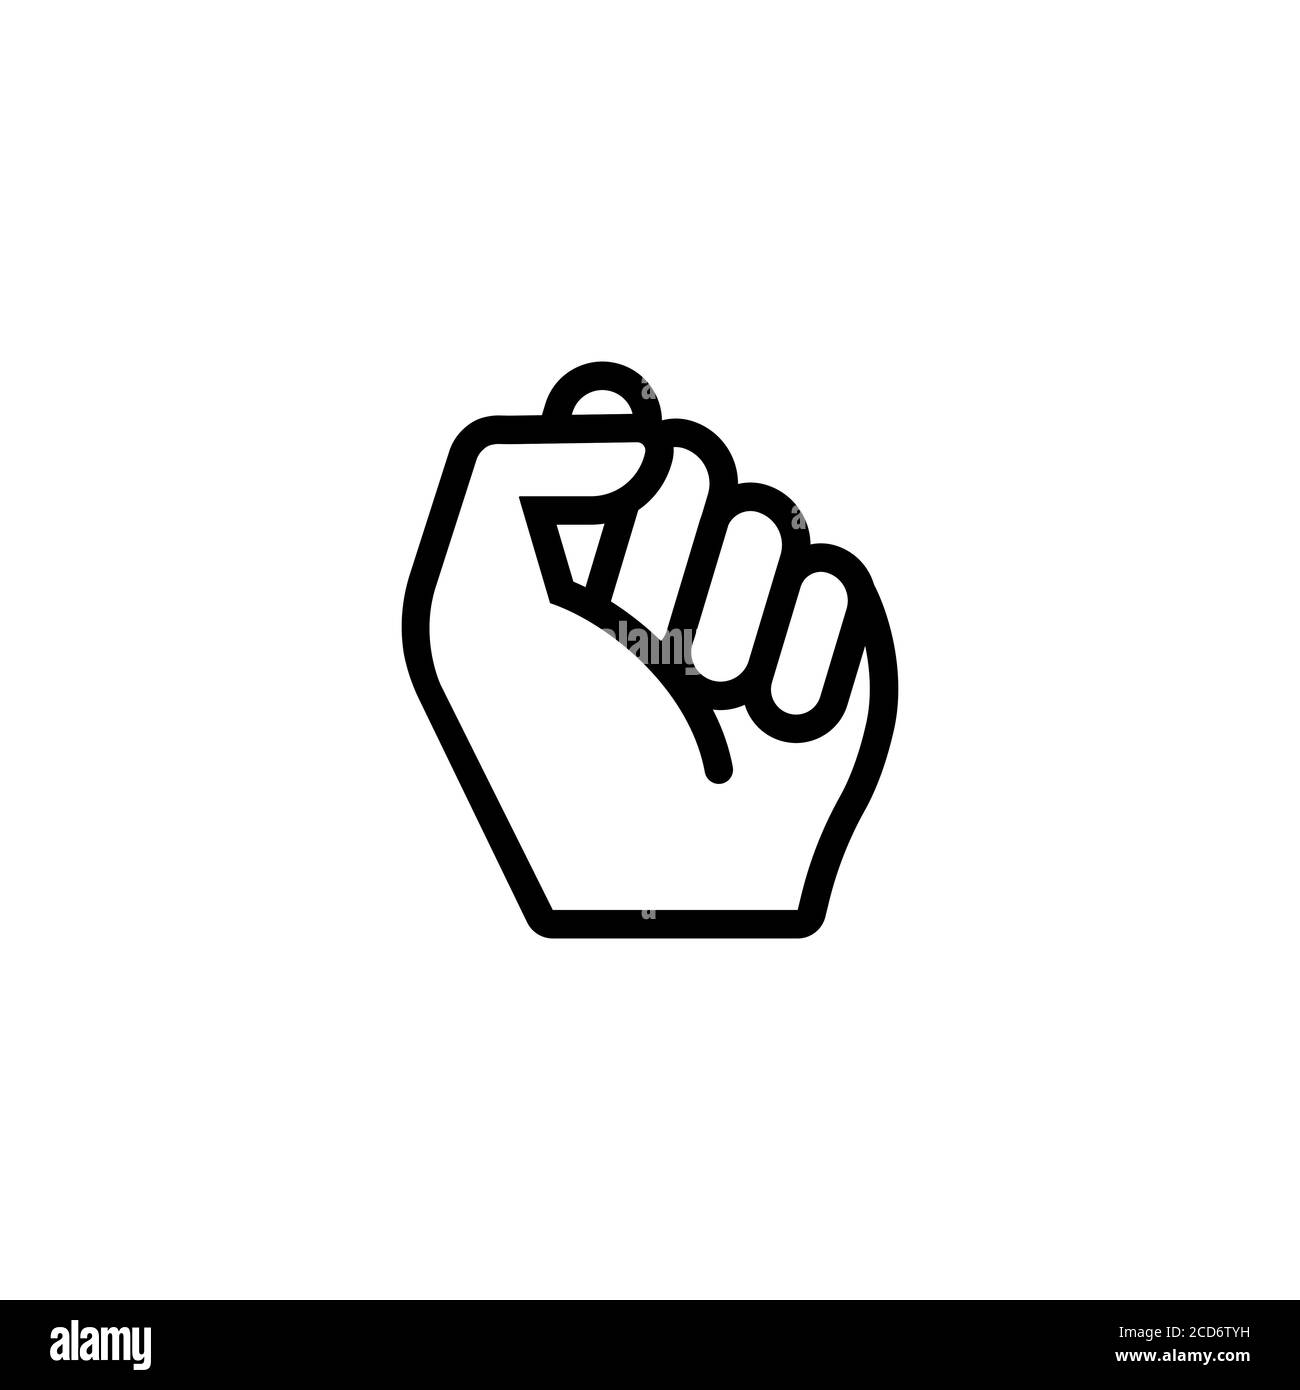 Prima icona della mano maschio. Icona del profilo del concetto di lotta di protesta. Simbolo di libertà, lotta, rivoluzione, unità. Vettore su sfondo bianco isolato. EPS 10 Illustrazione Vettoriale